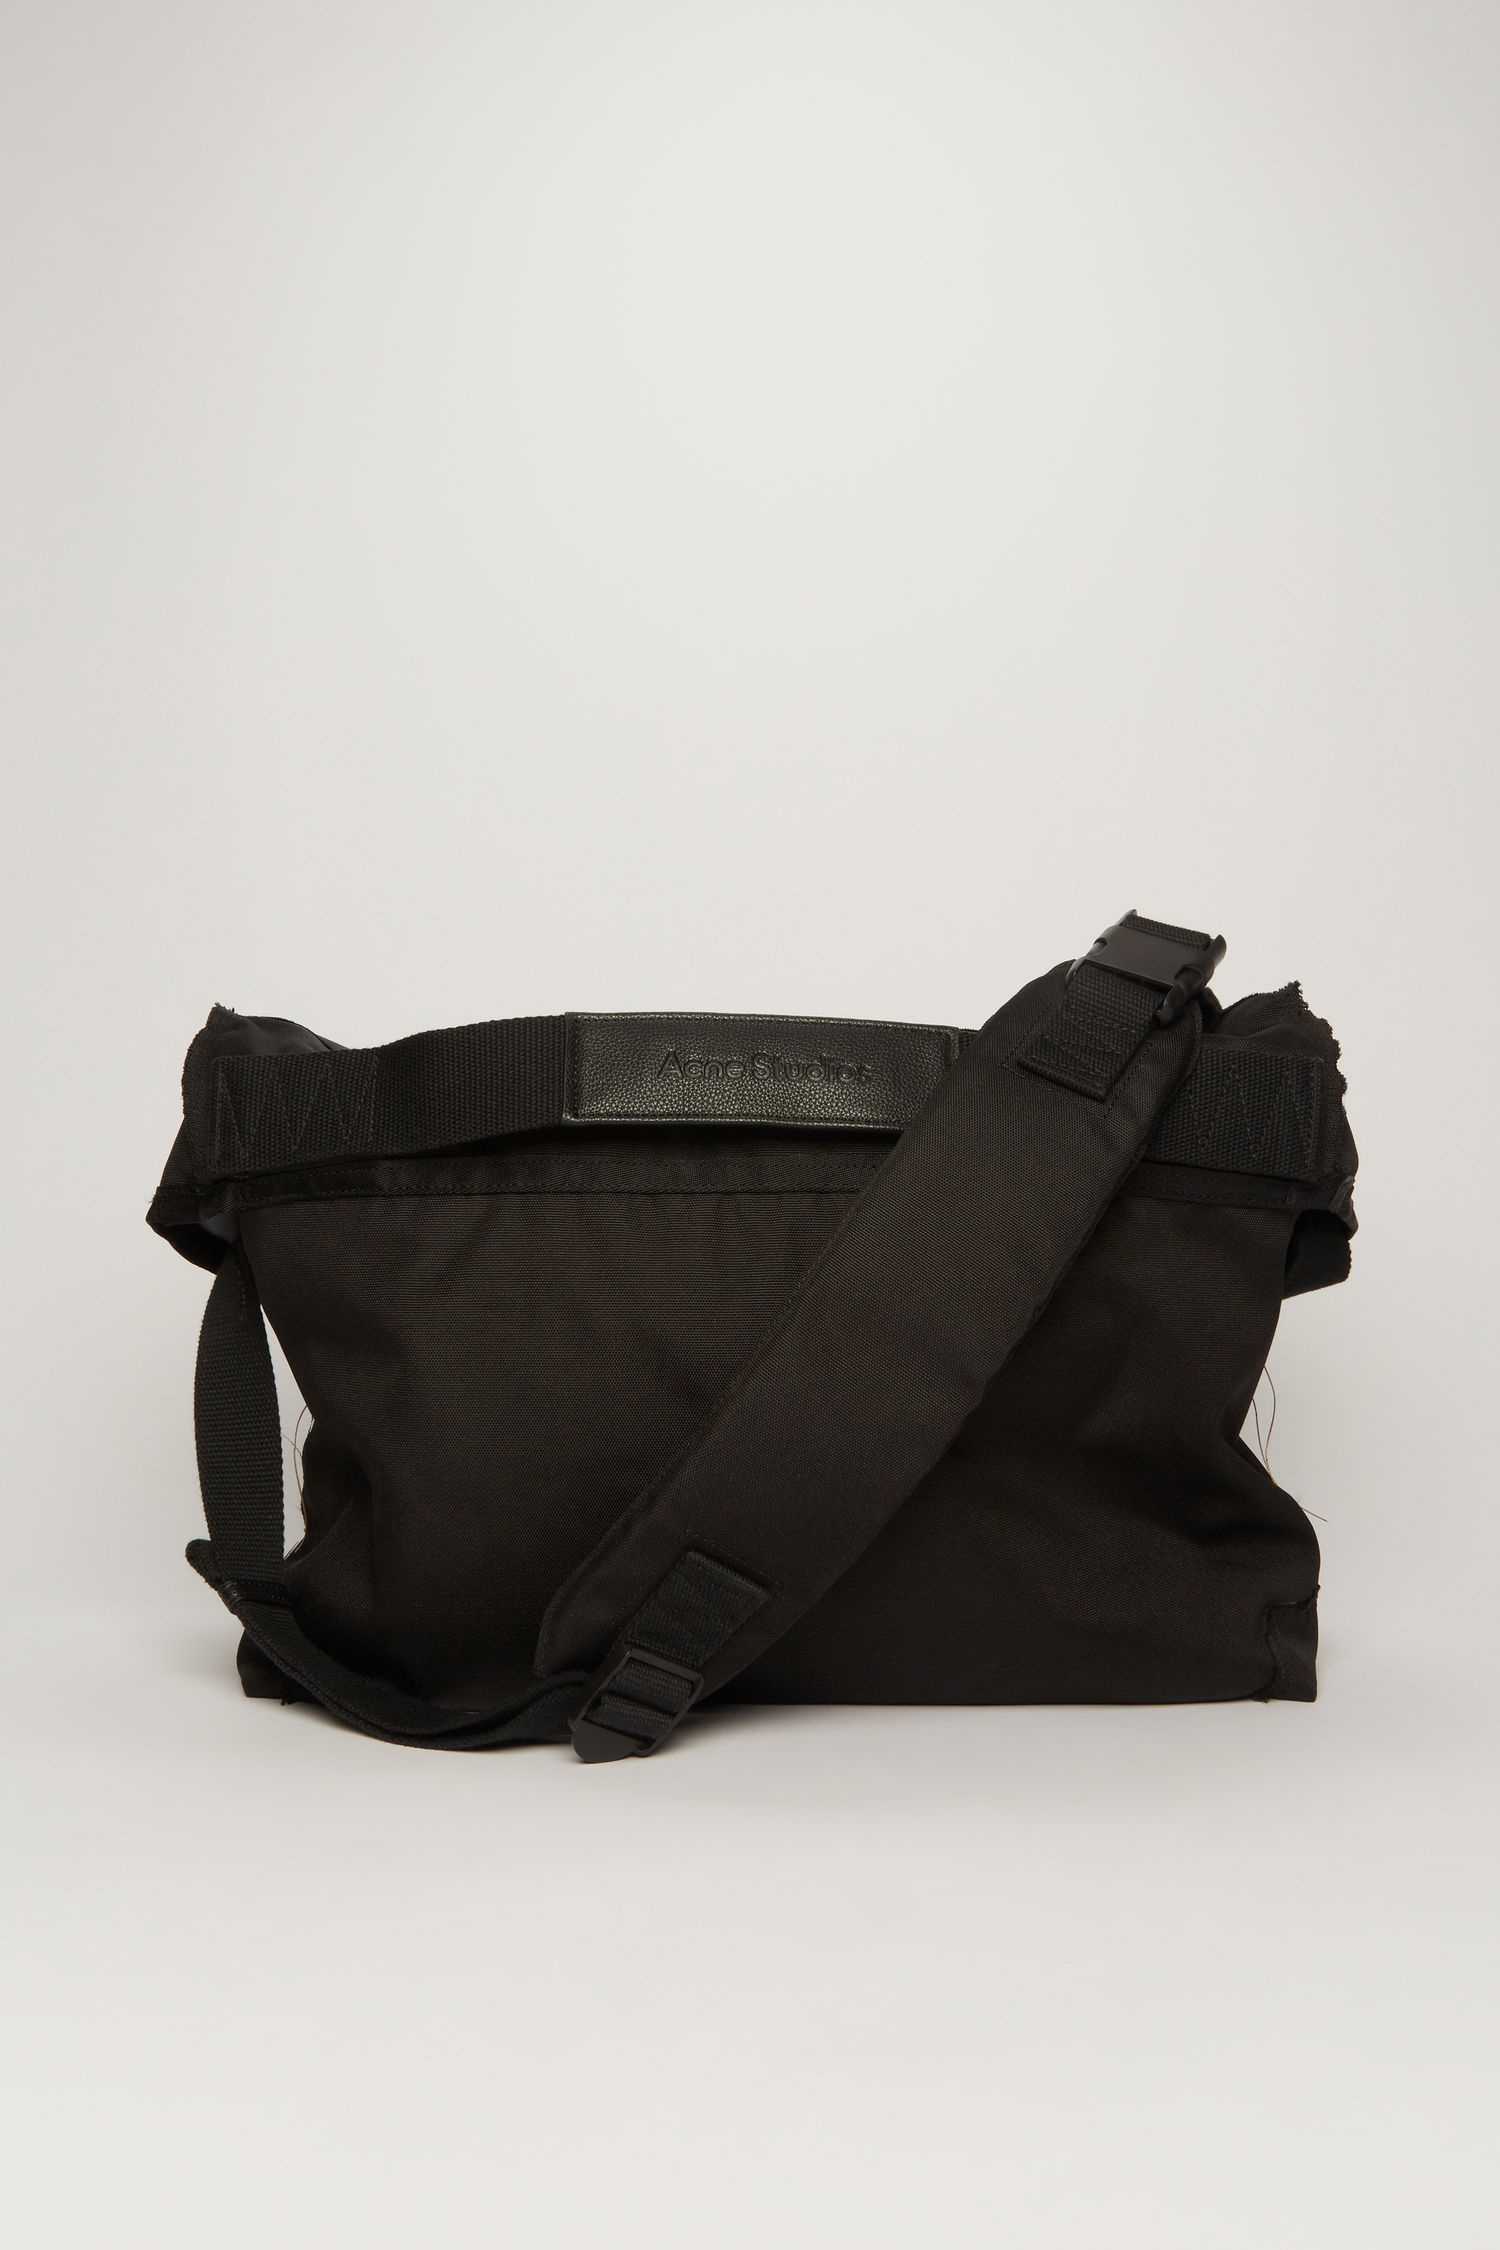 Messenger bag black - 4